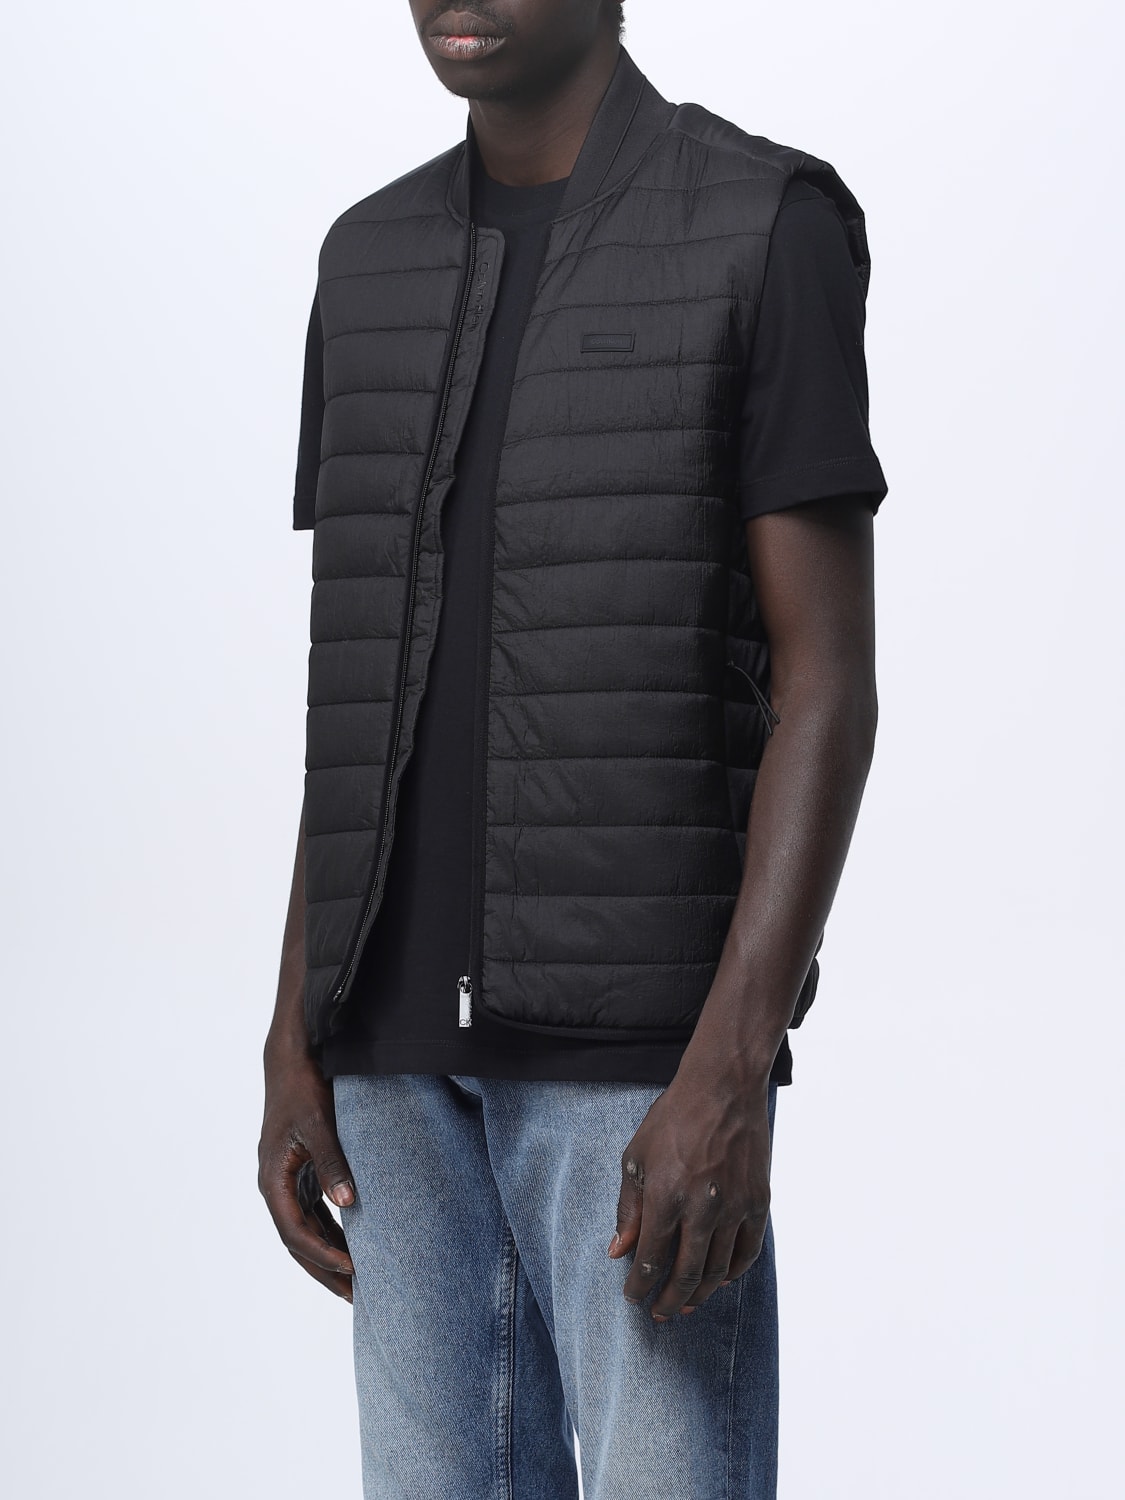 CALVIN KLEIN: suit vest for man - Black | Calvin Klein suit vest ...